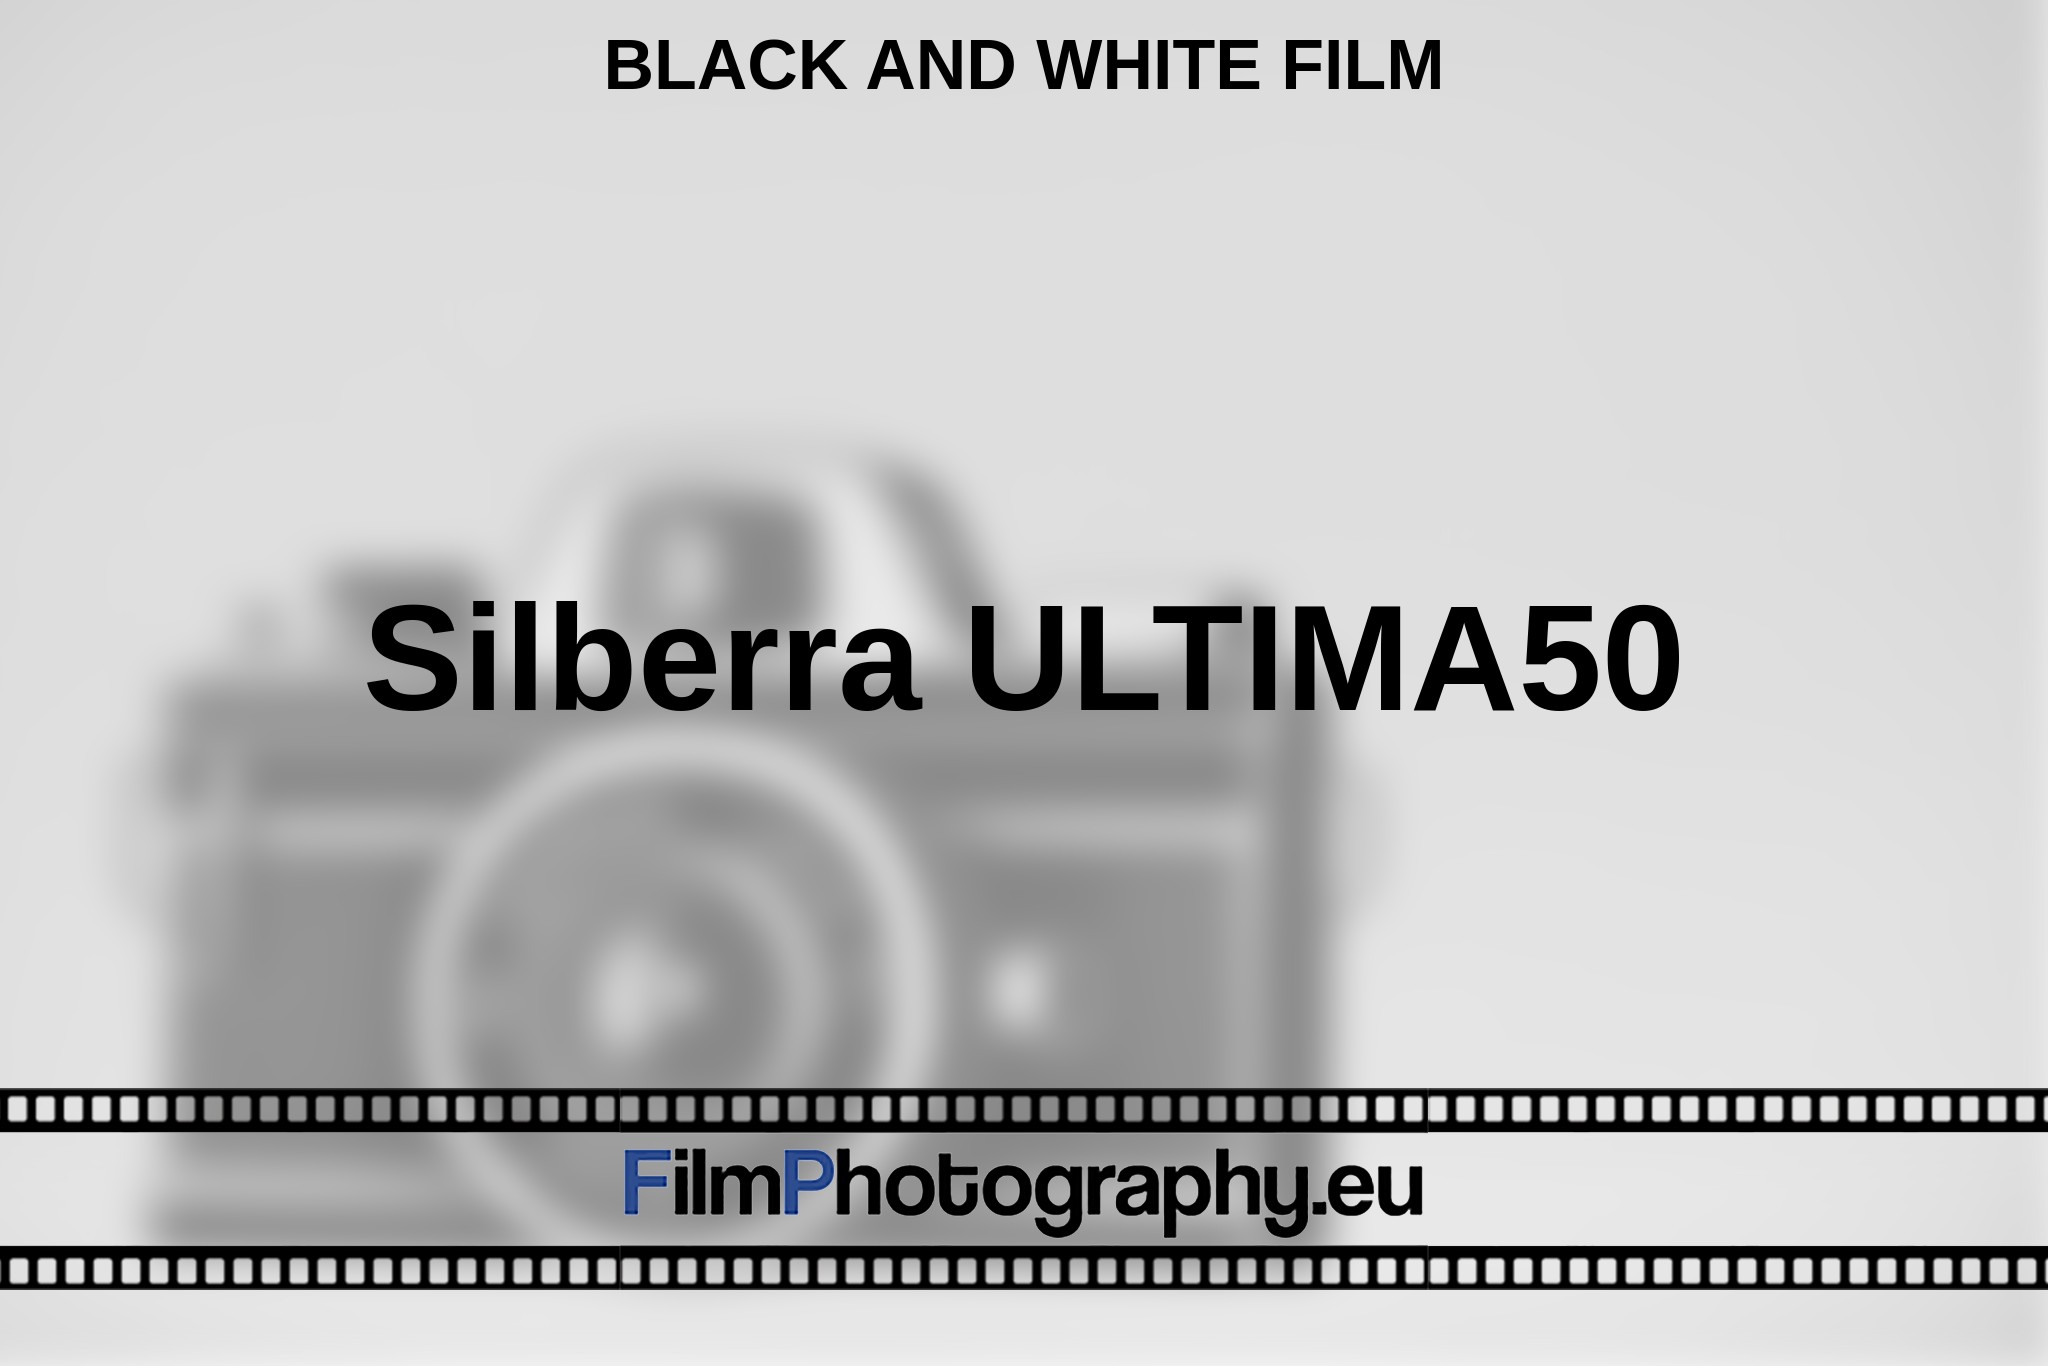 silberra-ultima50-black-and-white-film-en-bnv.jpg